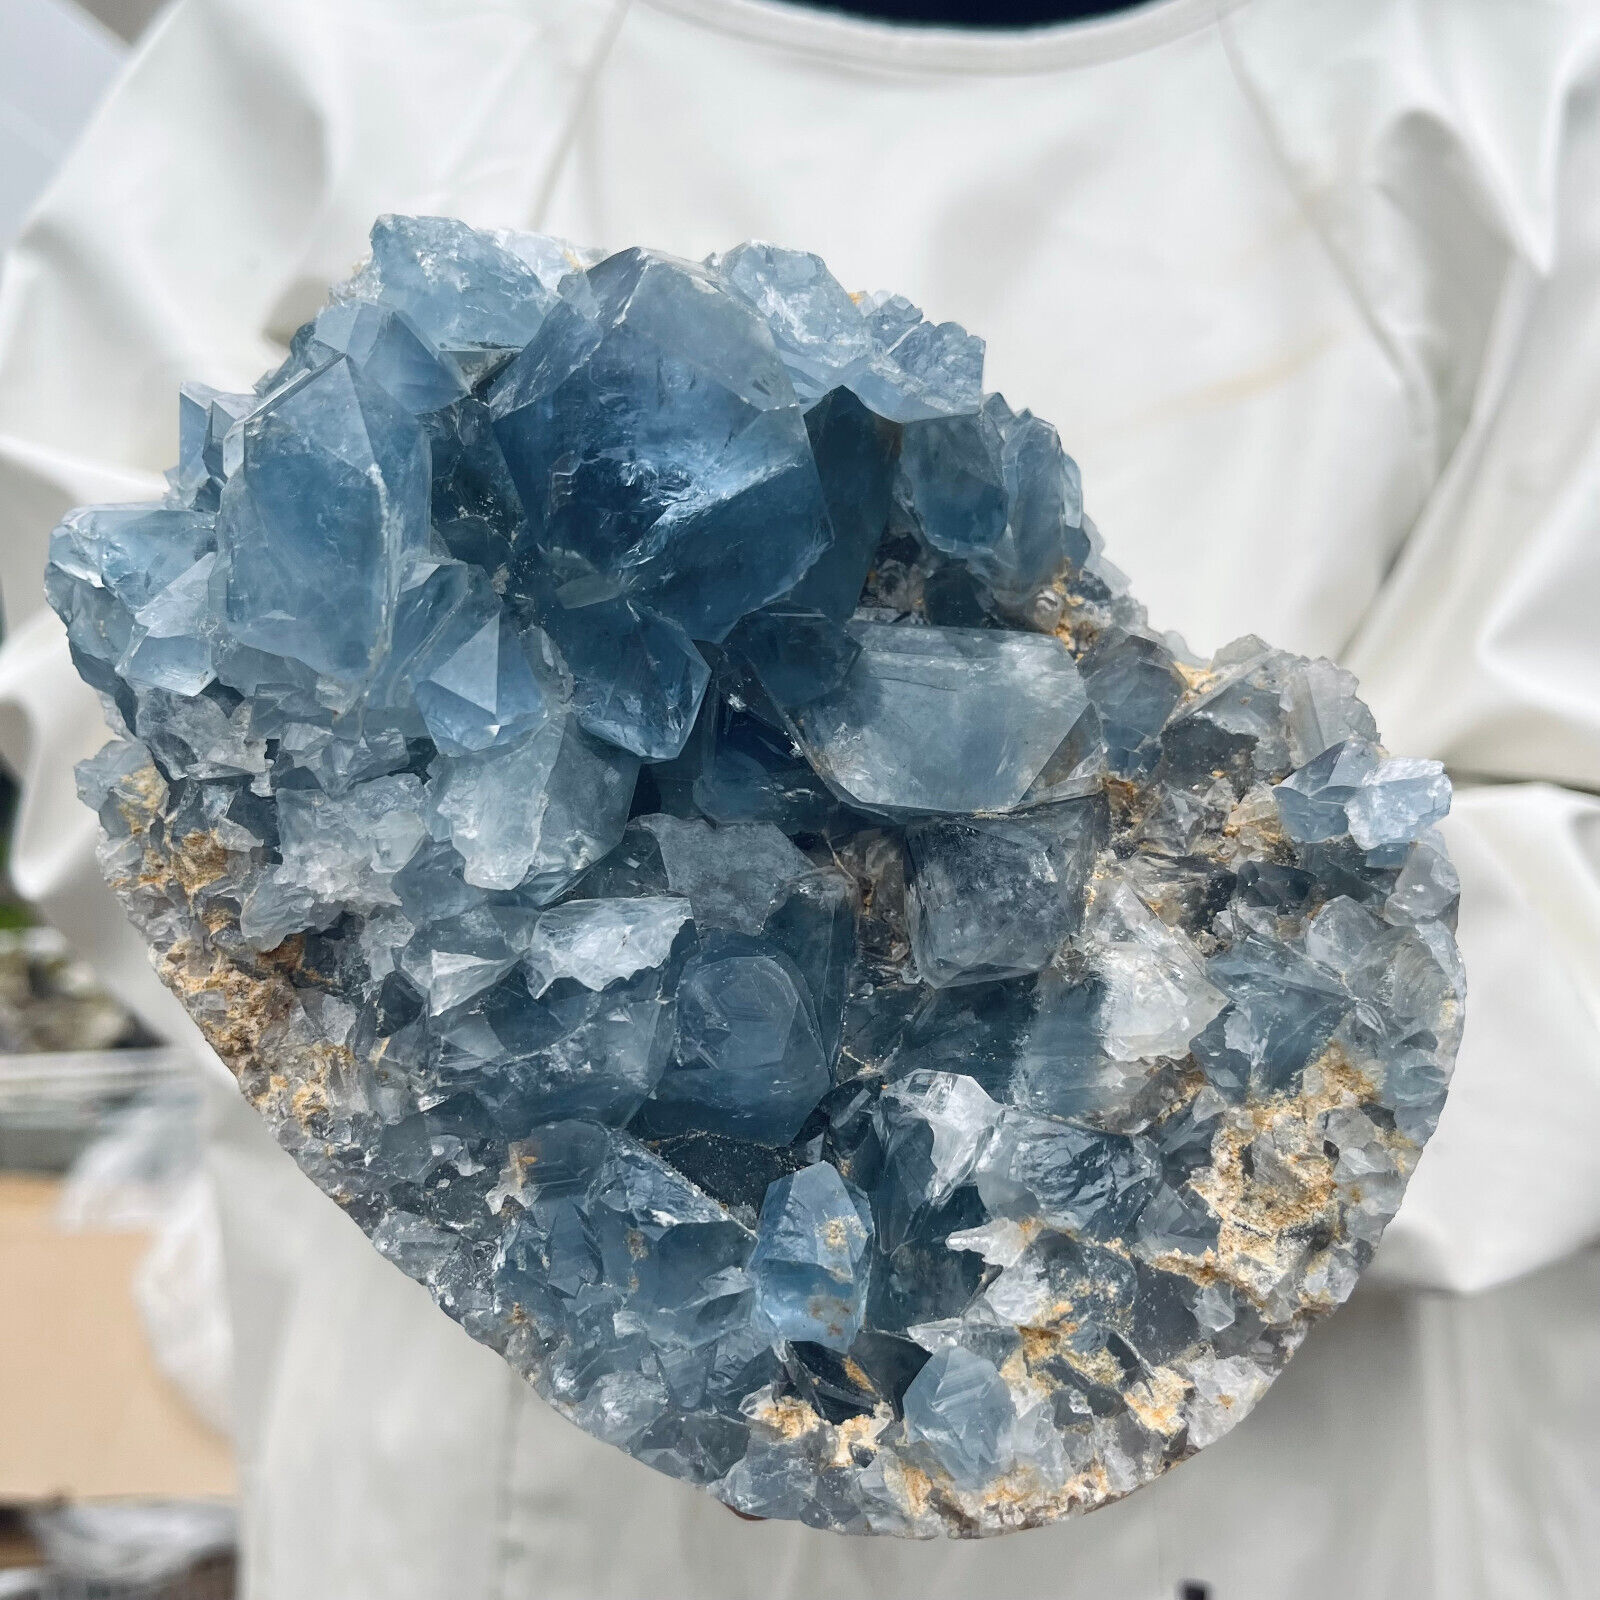 5.5lb Large Natural Blue Celestite Crystal Geode Quartz Cluster Mineral Specime